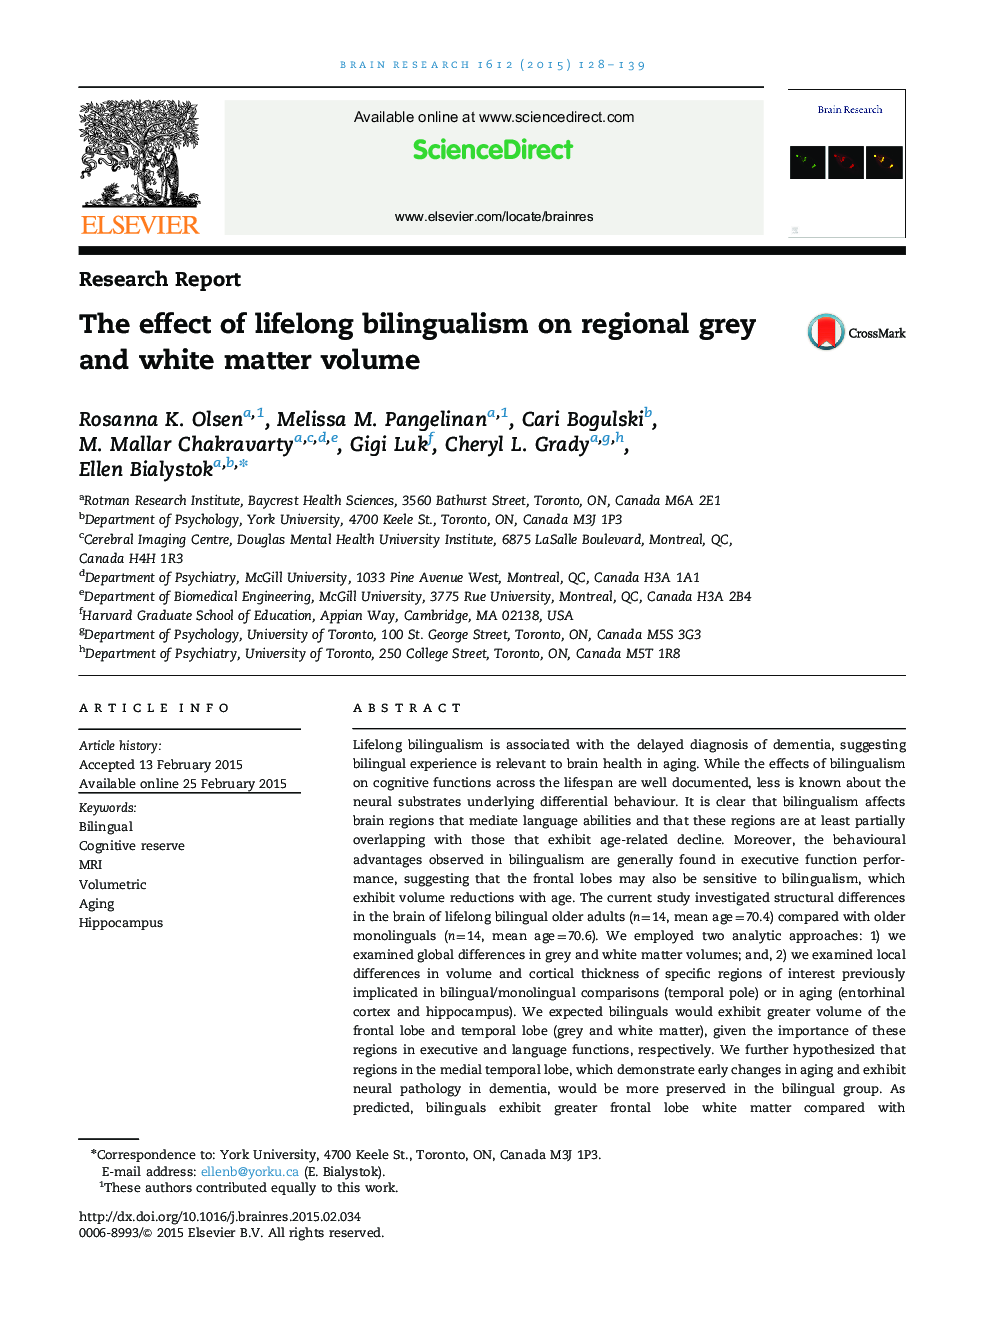 گزارش تحقیق تأثیر دوزبانگی مادام العمر در میزان حجم خاکستری و سفید منطقه 